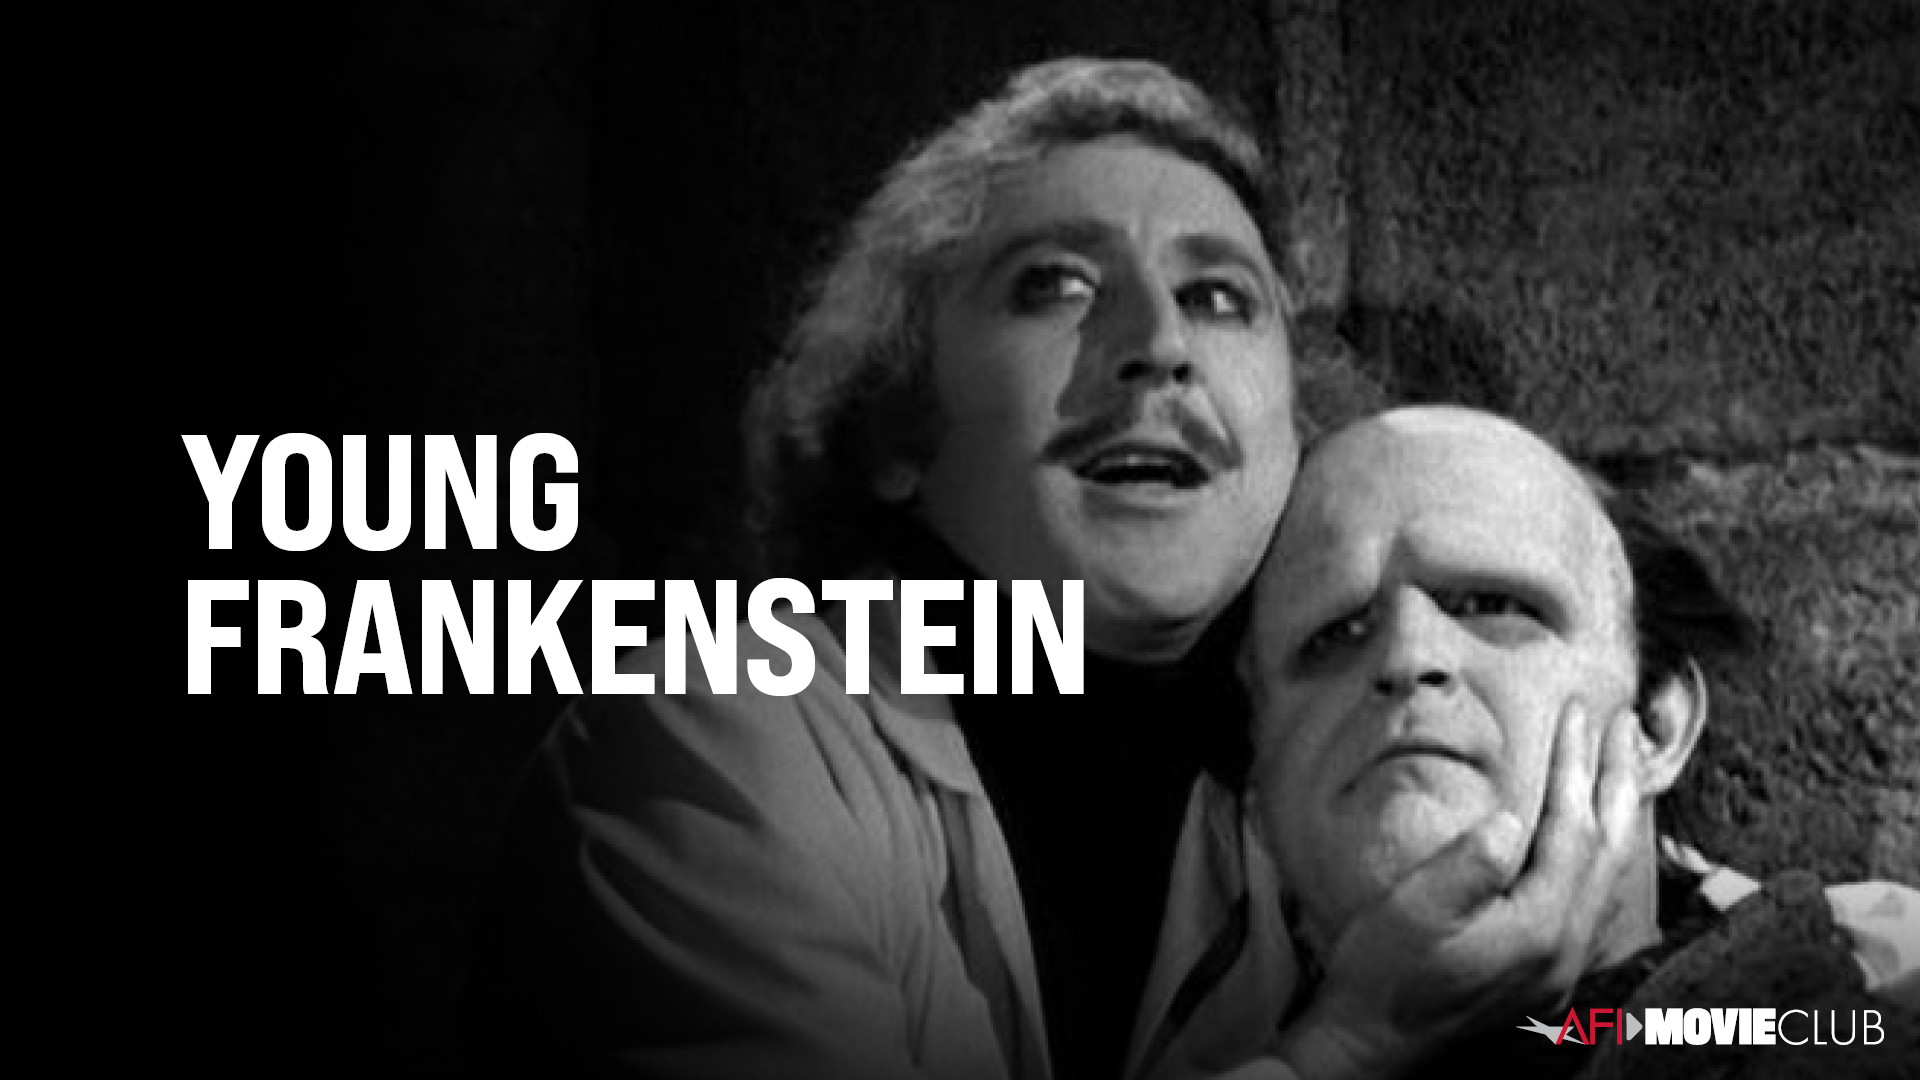 Young Frankenstein Film Still - Gene Wilder and Peter Boyle